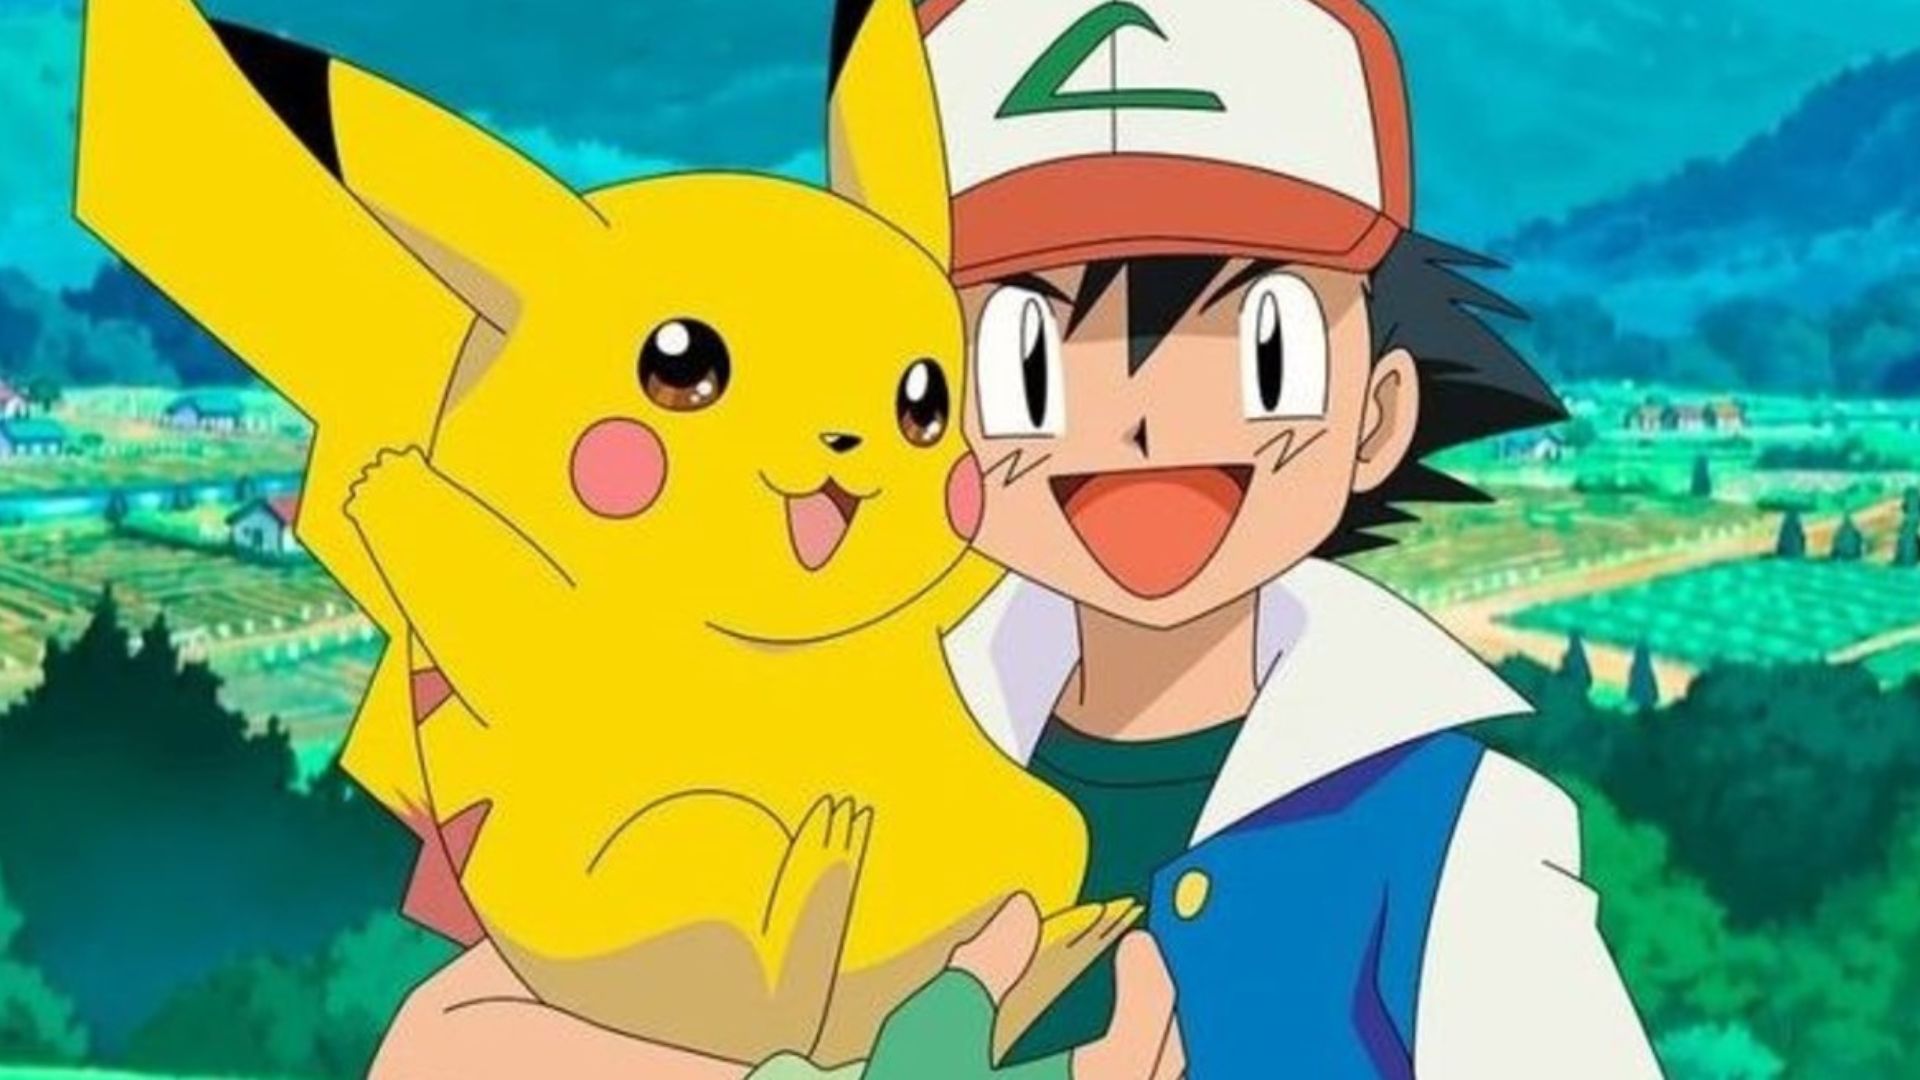 Pokémon se despede de Pikachu e Ash e lança nova série animada